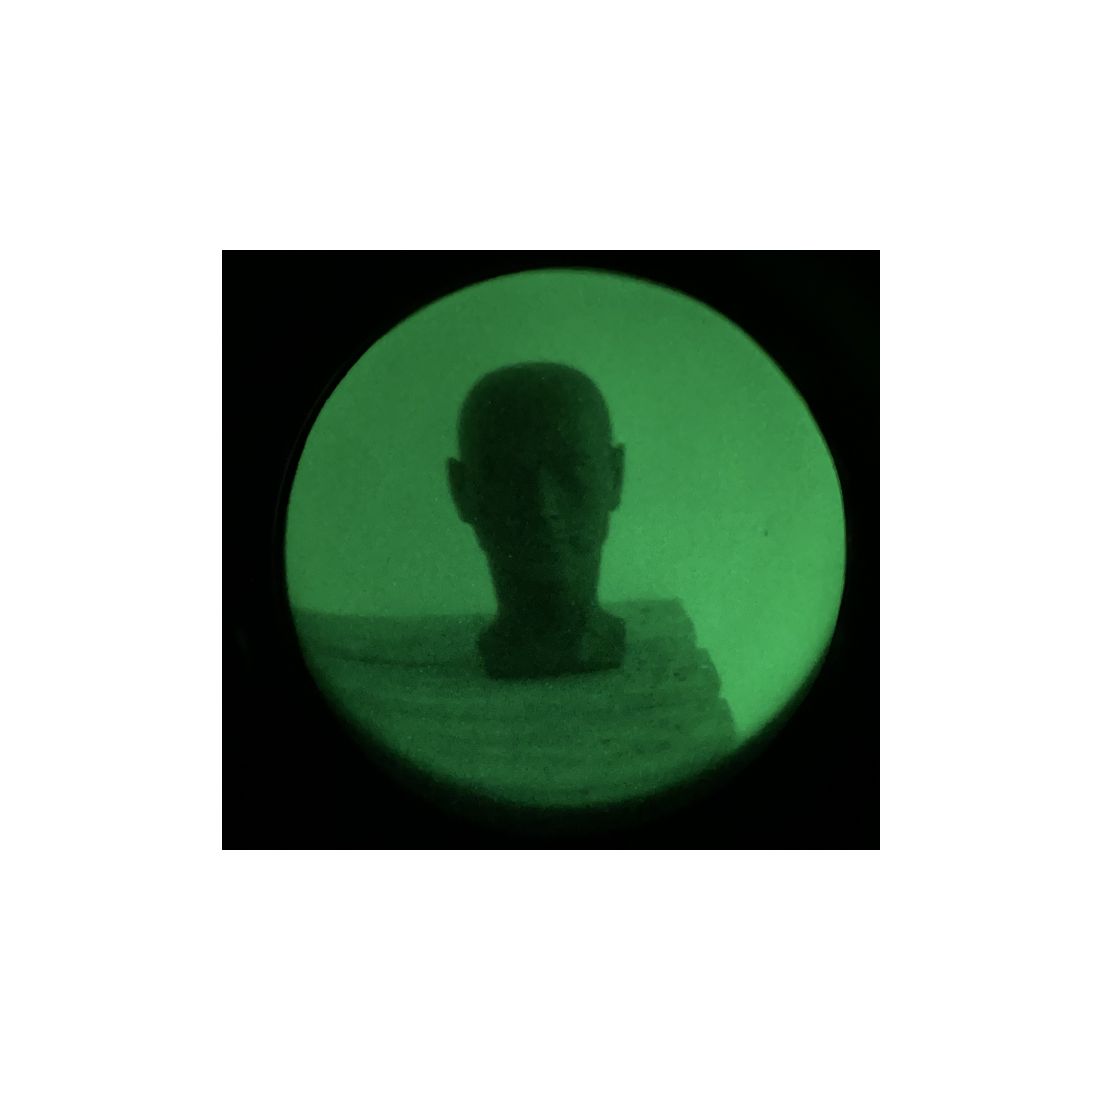 Nightspotter NIGHTVISION 1:1 Beobachtungsgerät Monokular 43mm Röhre GREEN, Gen2+